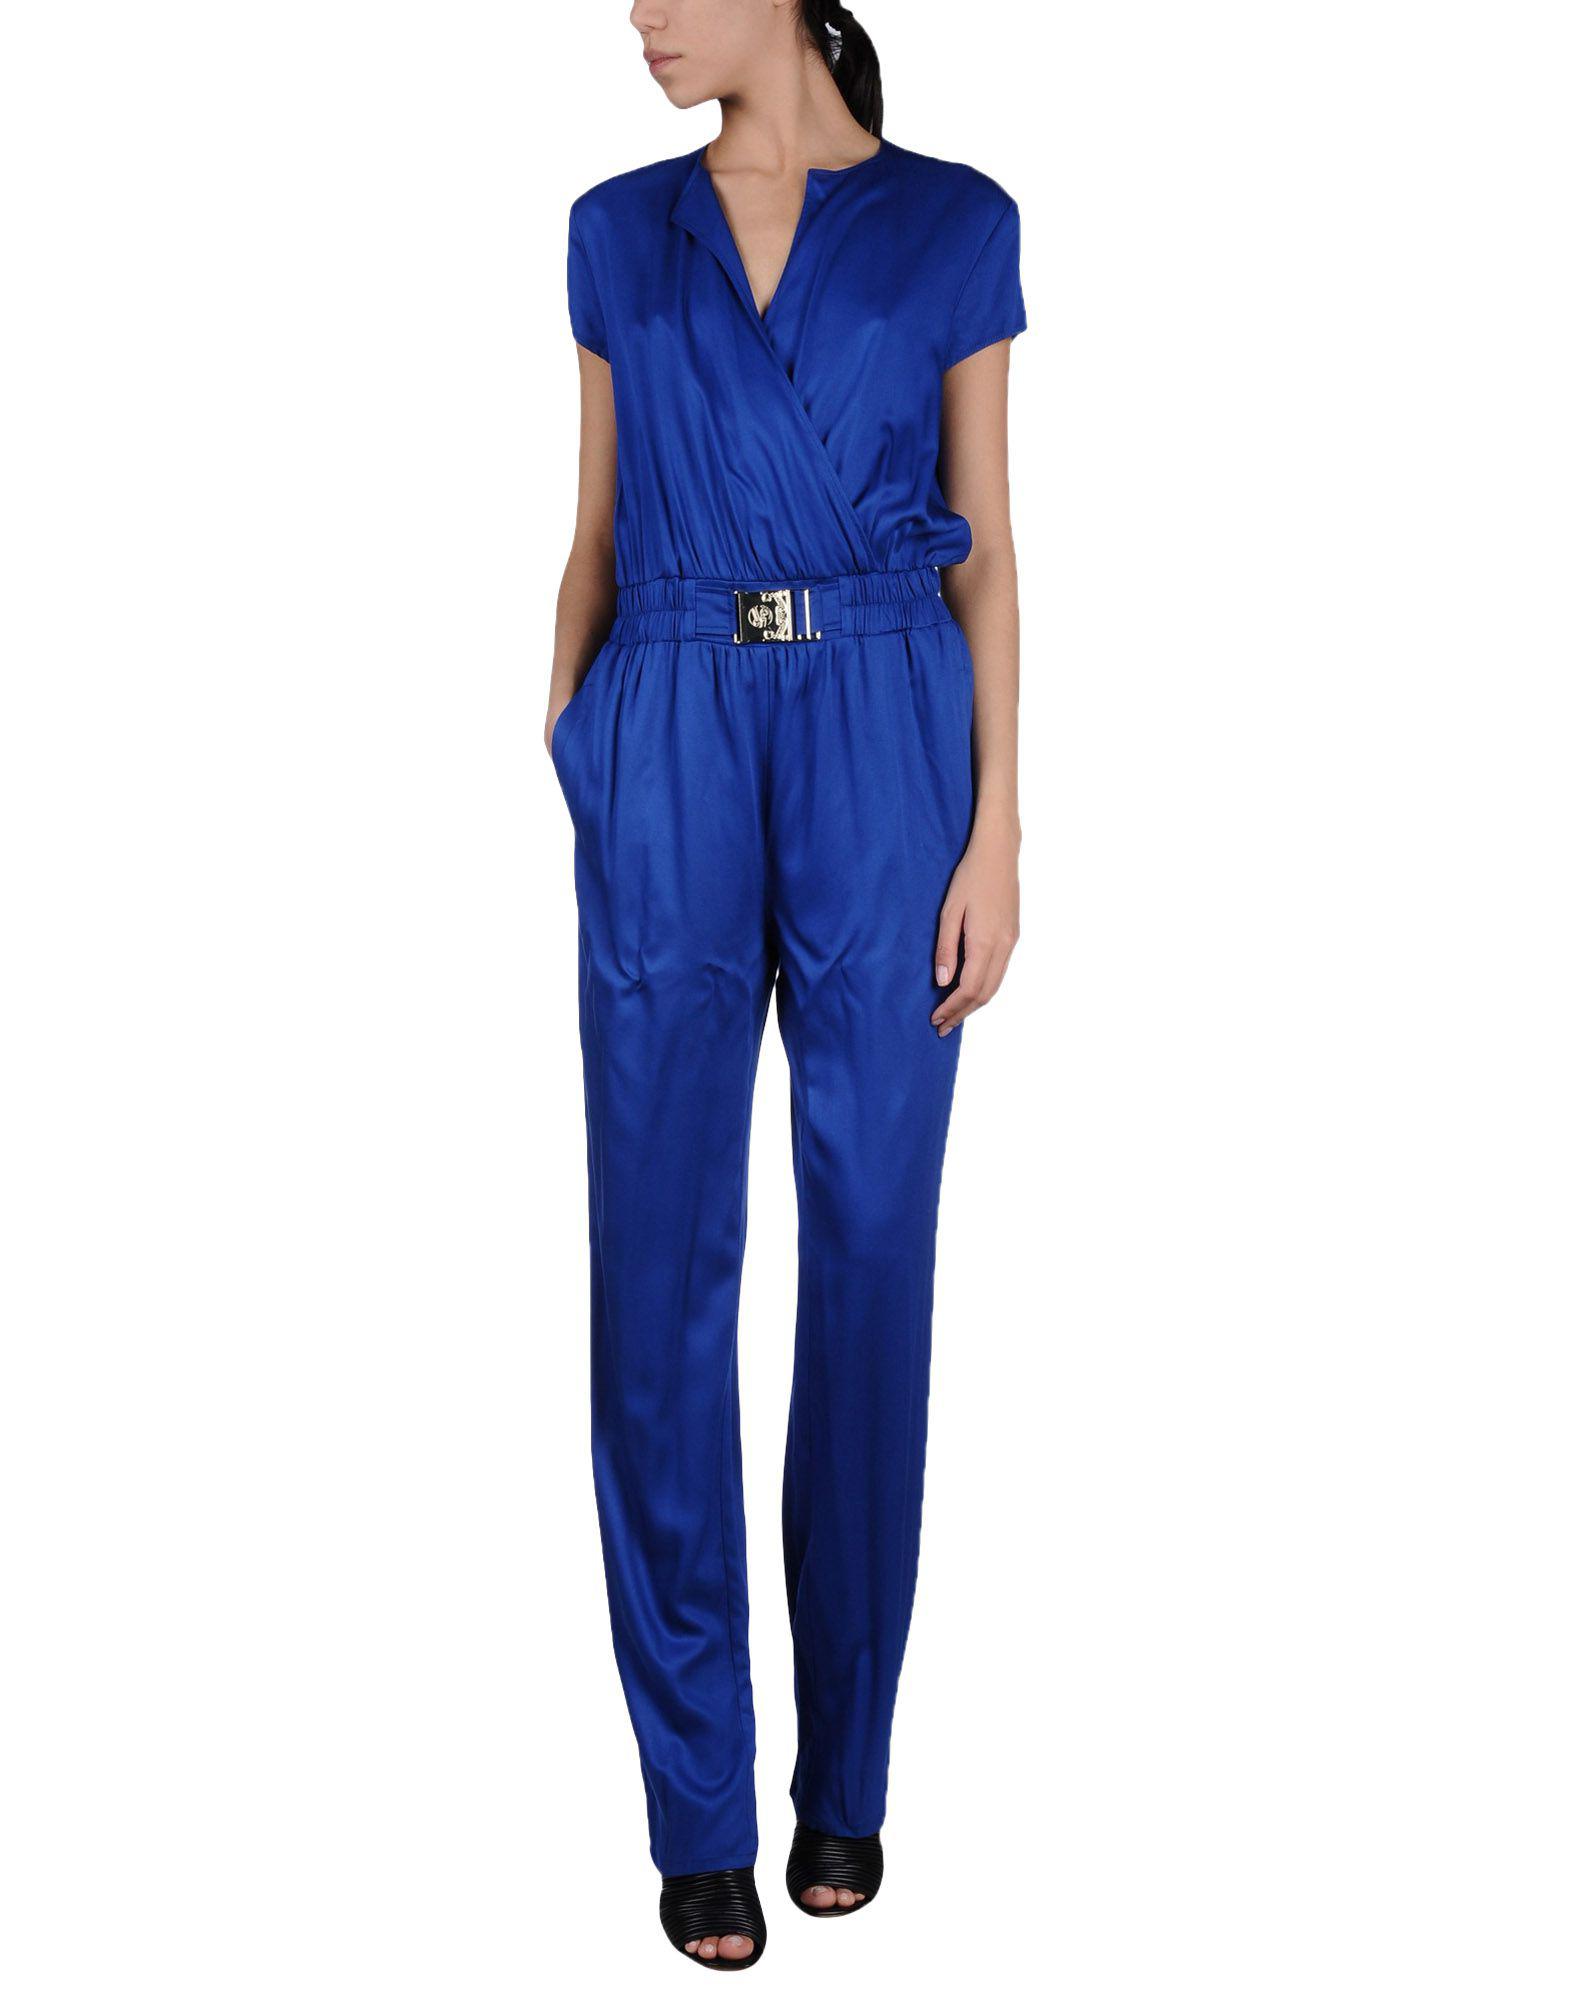 blue versace jumpsuit